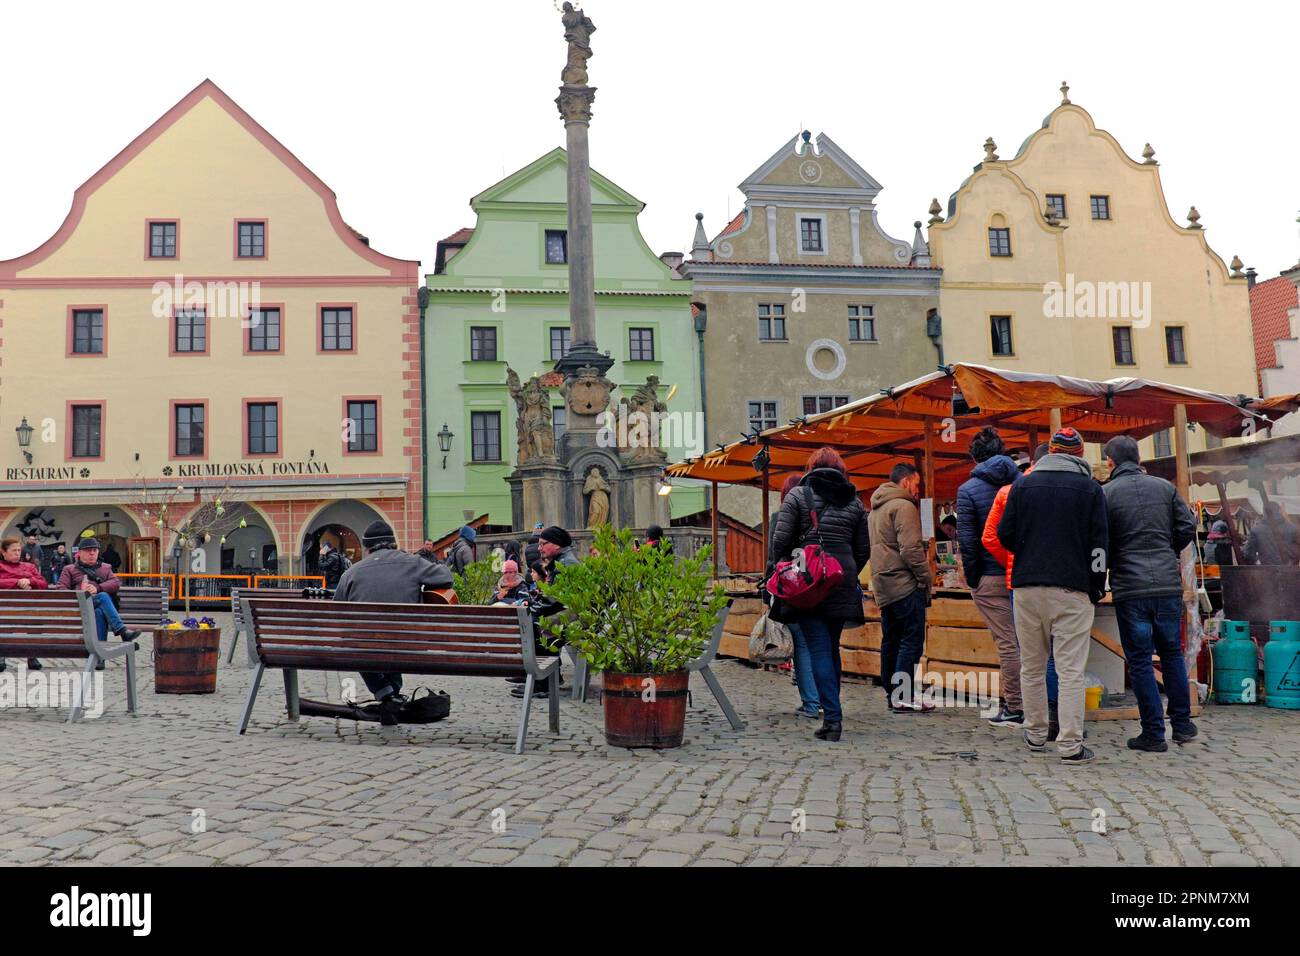 Ein Markt im Freien auf dem Svornosti-Platz in der mittelalterlichen Stadt Ceske Krumlov zieht Besucher wegen seiner historischen Architektur und der Pestsäule an. Die Säule wurde 1716 als Erinnerung an die Beulenpest-Epidemie errichtet, die die Stadt von 1680-1682 heimsuchte. Stockfoto